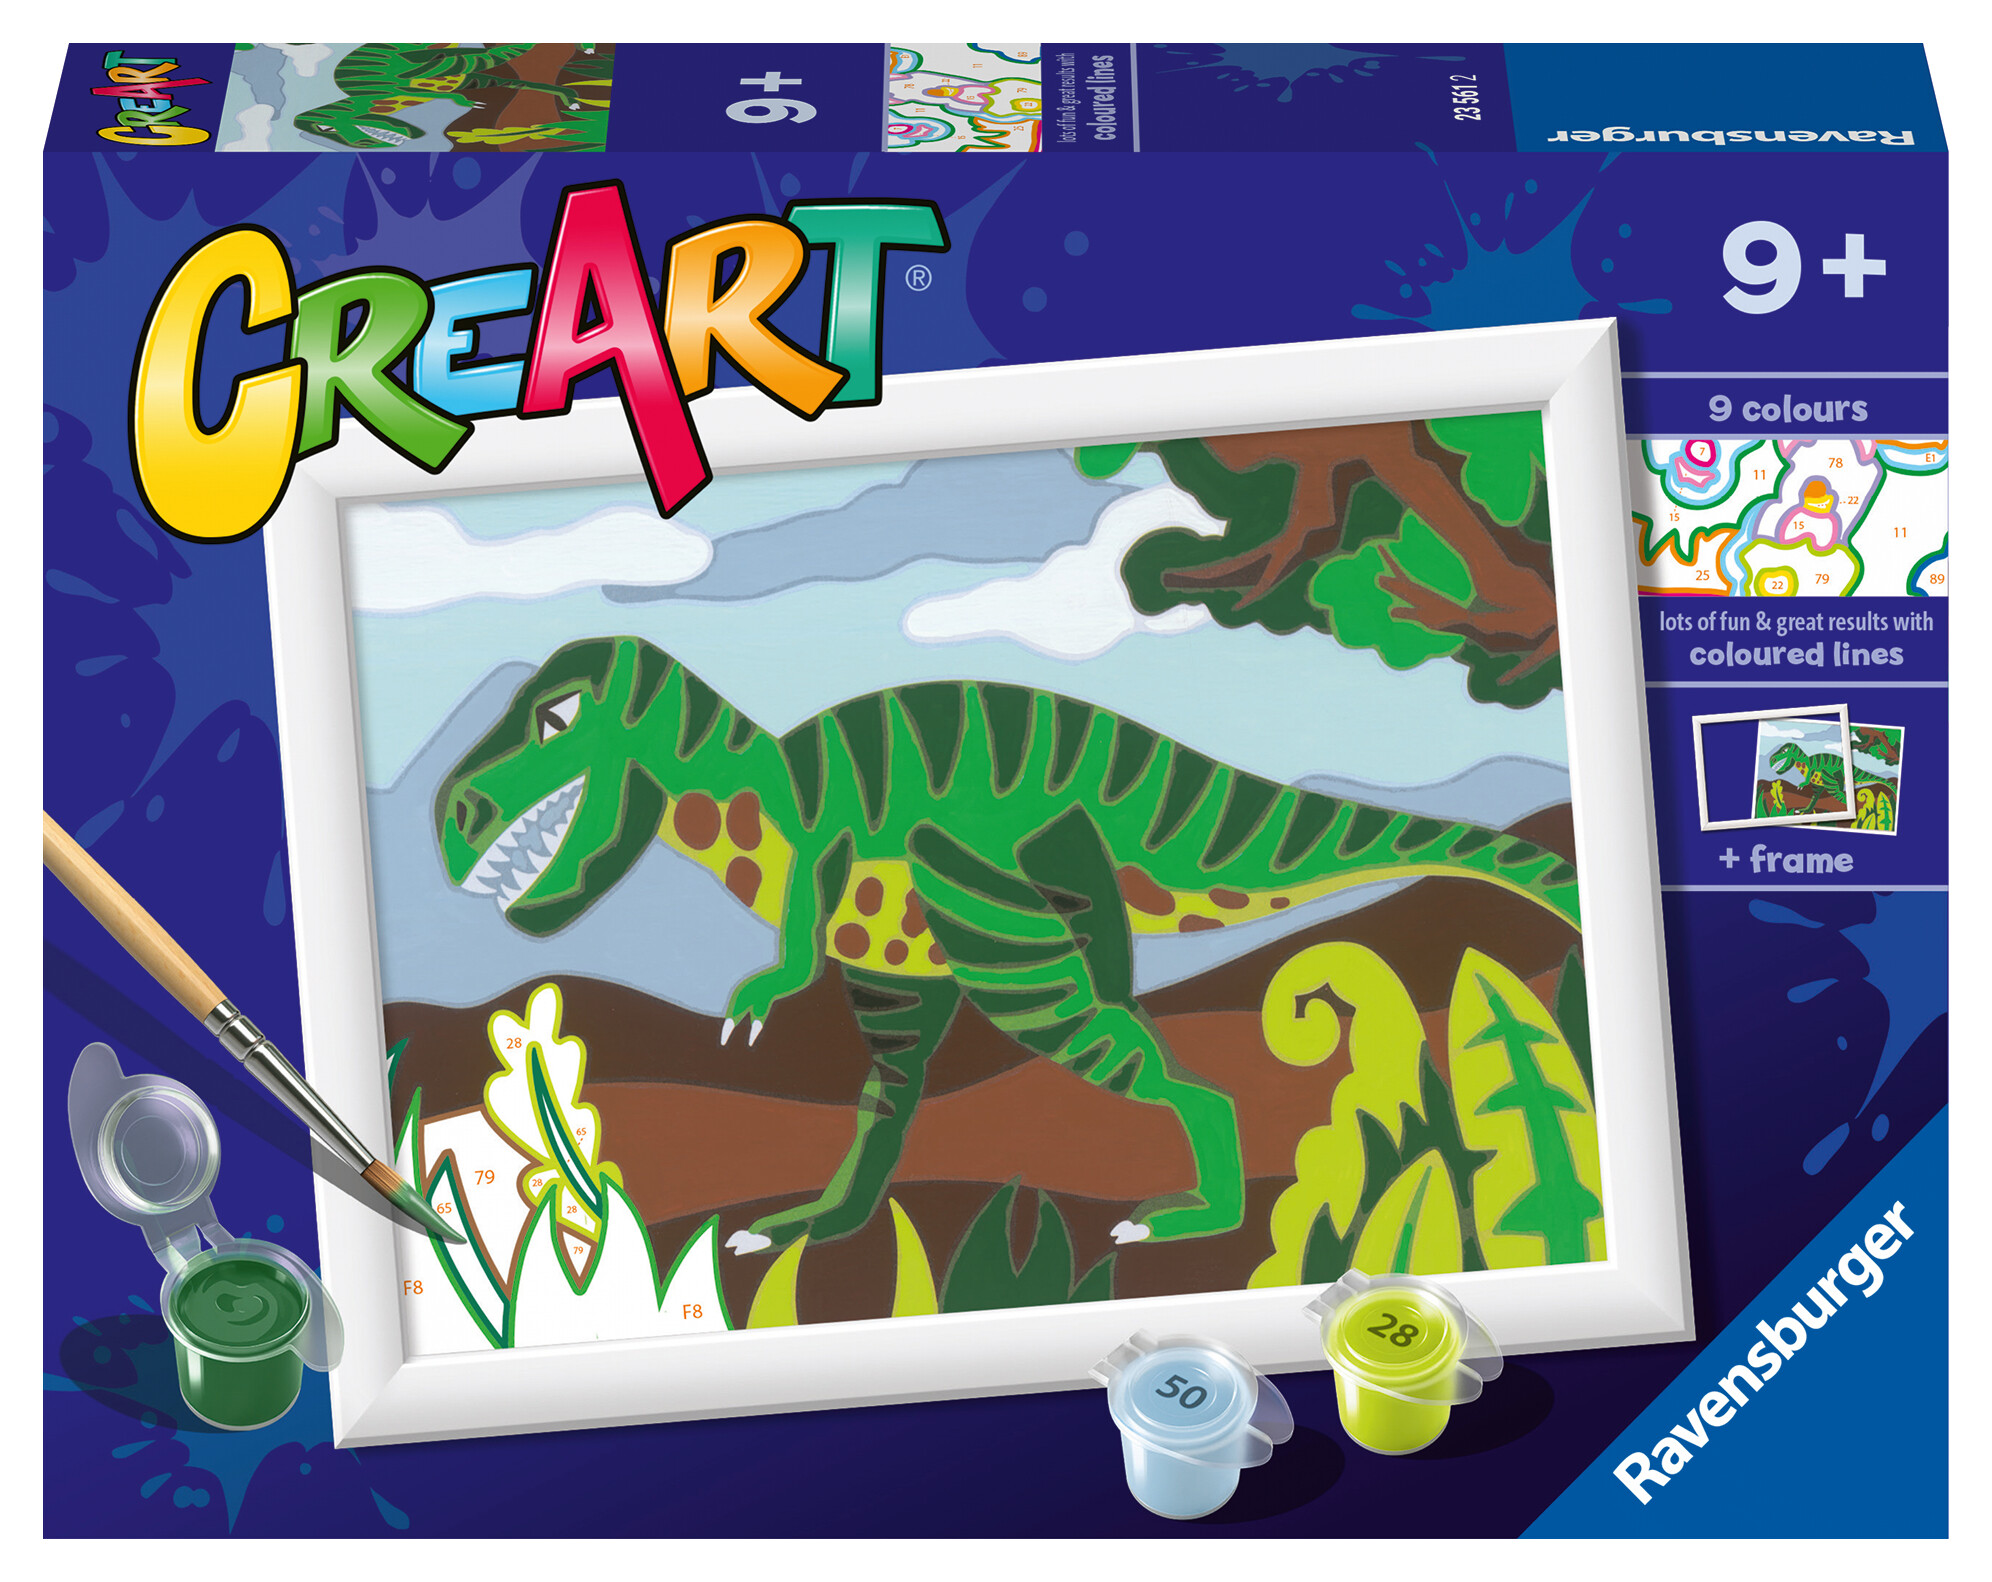 Ravensburger - creart serie e: dinosauro affamato, kit per dipingere con i numeri, contiene una tavola prestampata, pennello, colori e accessori, gioco creativo per bambini 9+ anni - CREART